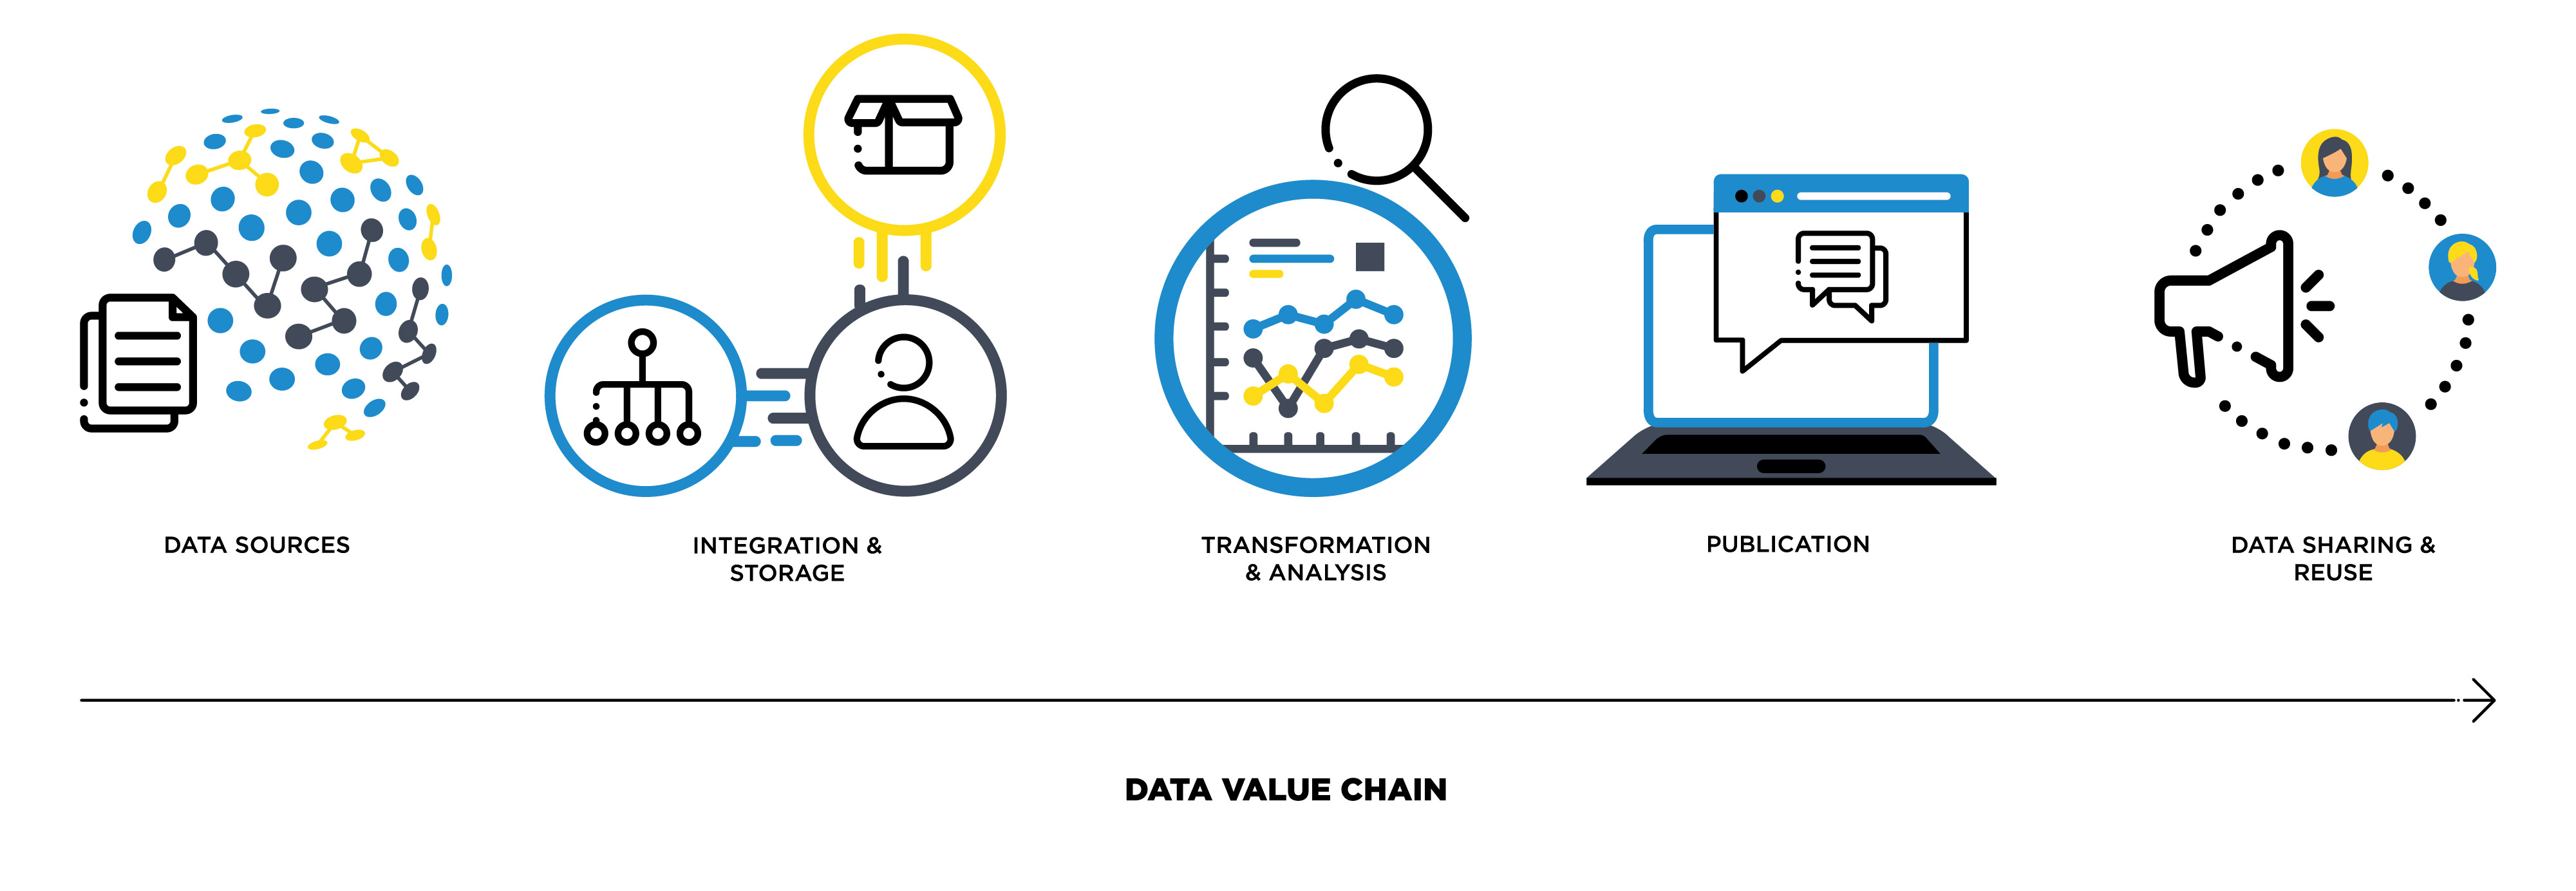 data_value_chain